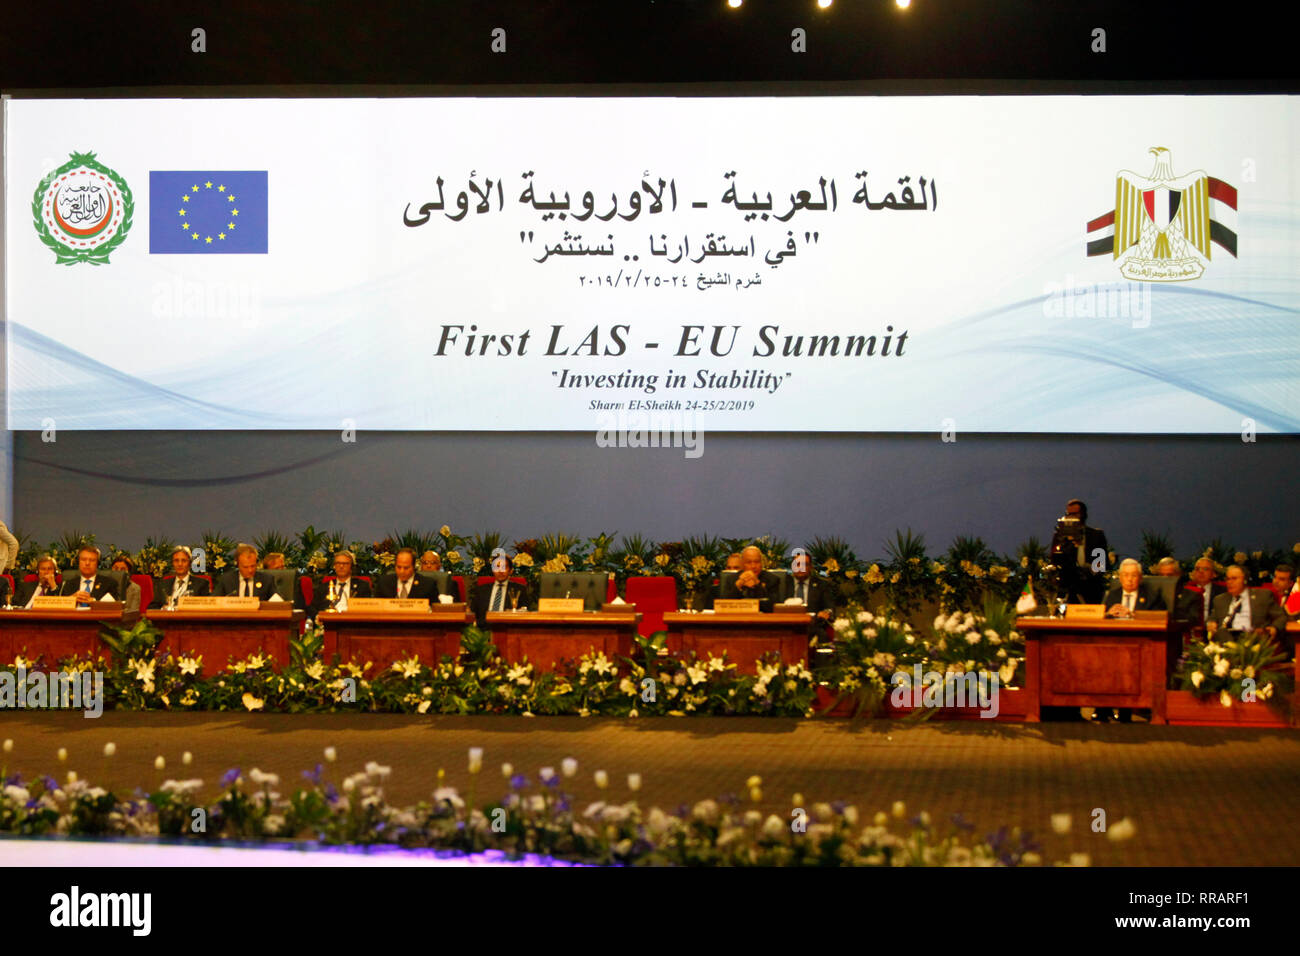 (190226) -- CHARM EL-CHEIKH, le 26 février 2019 (Xinhua) -- Photo prise le 25 février 2019 montre la scène de la première Ligue des États arabes (LEA) et l'Union européenne (UE) Sommet de Charm el-Cheikh, en Egypte. Plus de 50 pays européens et arabes ont participé aux deux journées de LAS-Sommet de l'UE. Elle a été l'occasion pour les dirigeants de discuter des derniers développements dans la région, tels que le processus de paix au Moyen-Orient et la situation au Yémen, en Libye et en Syrie. (Xinhua/Ahmed Gomaa) Banque D'Images